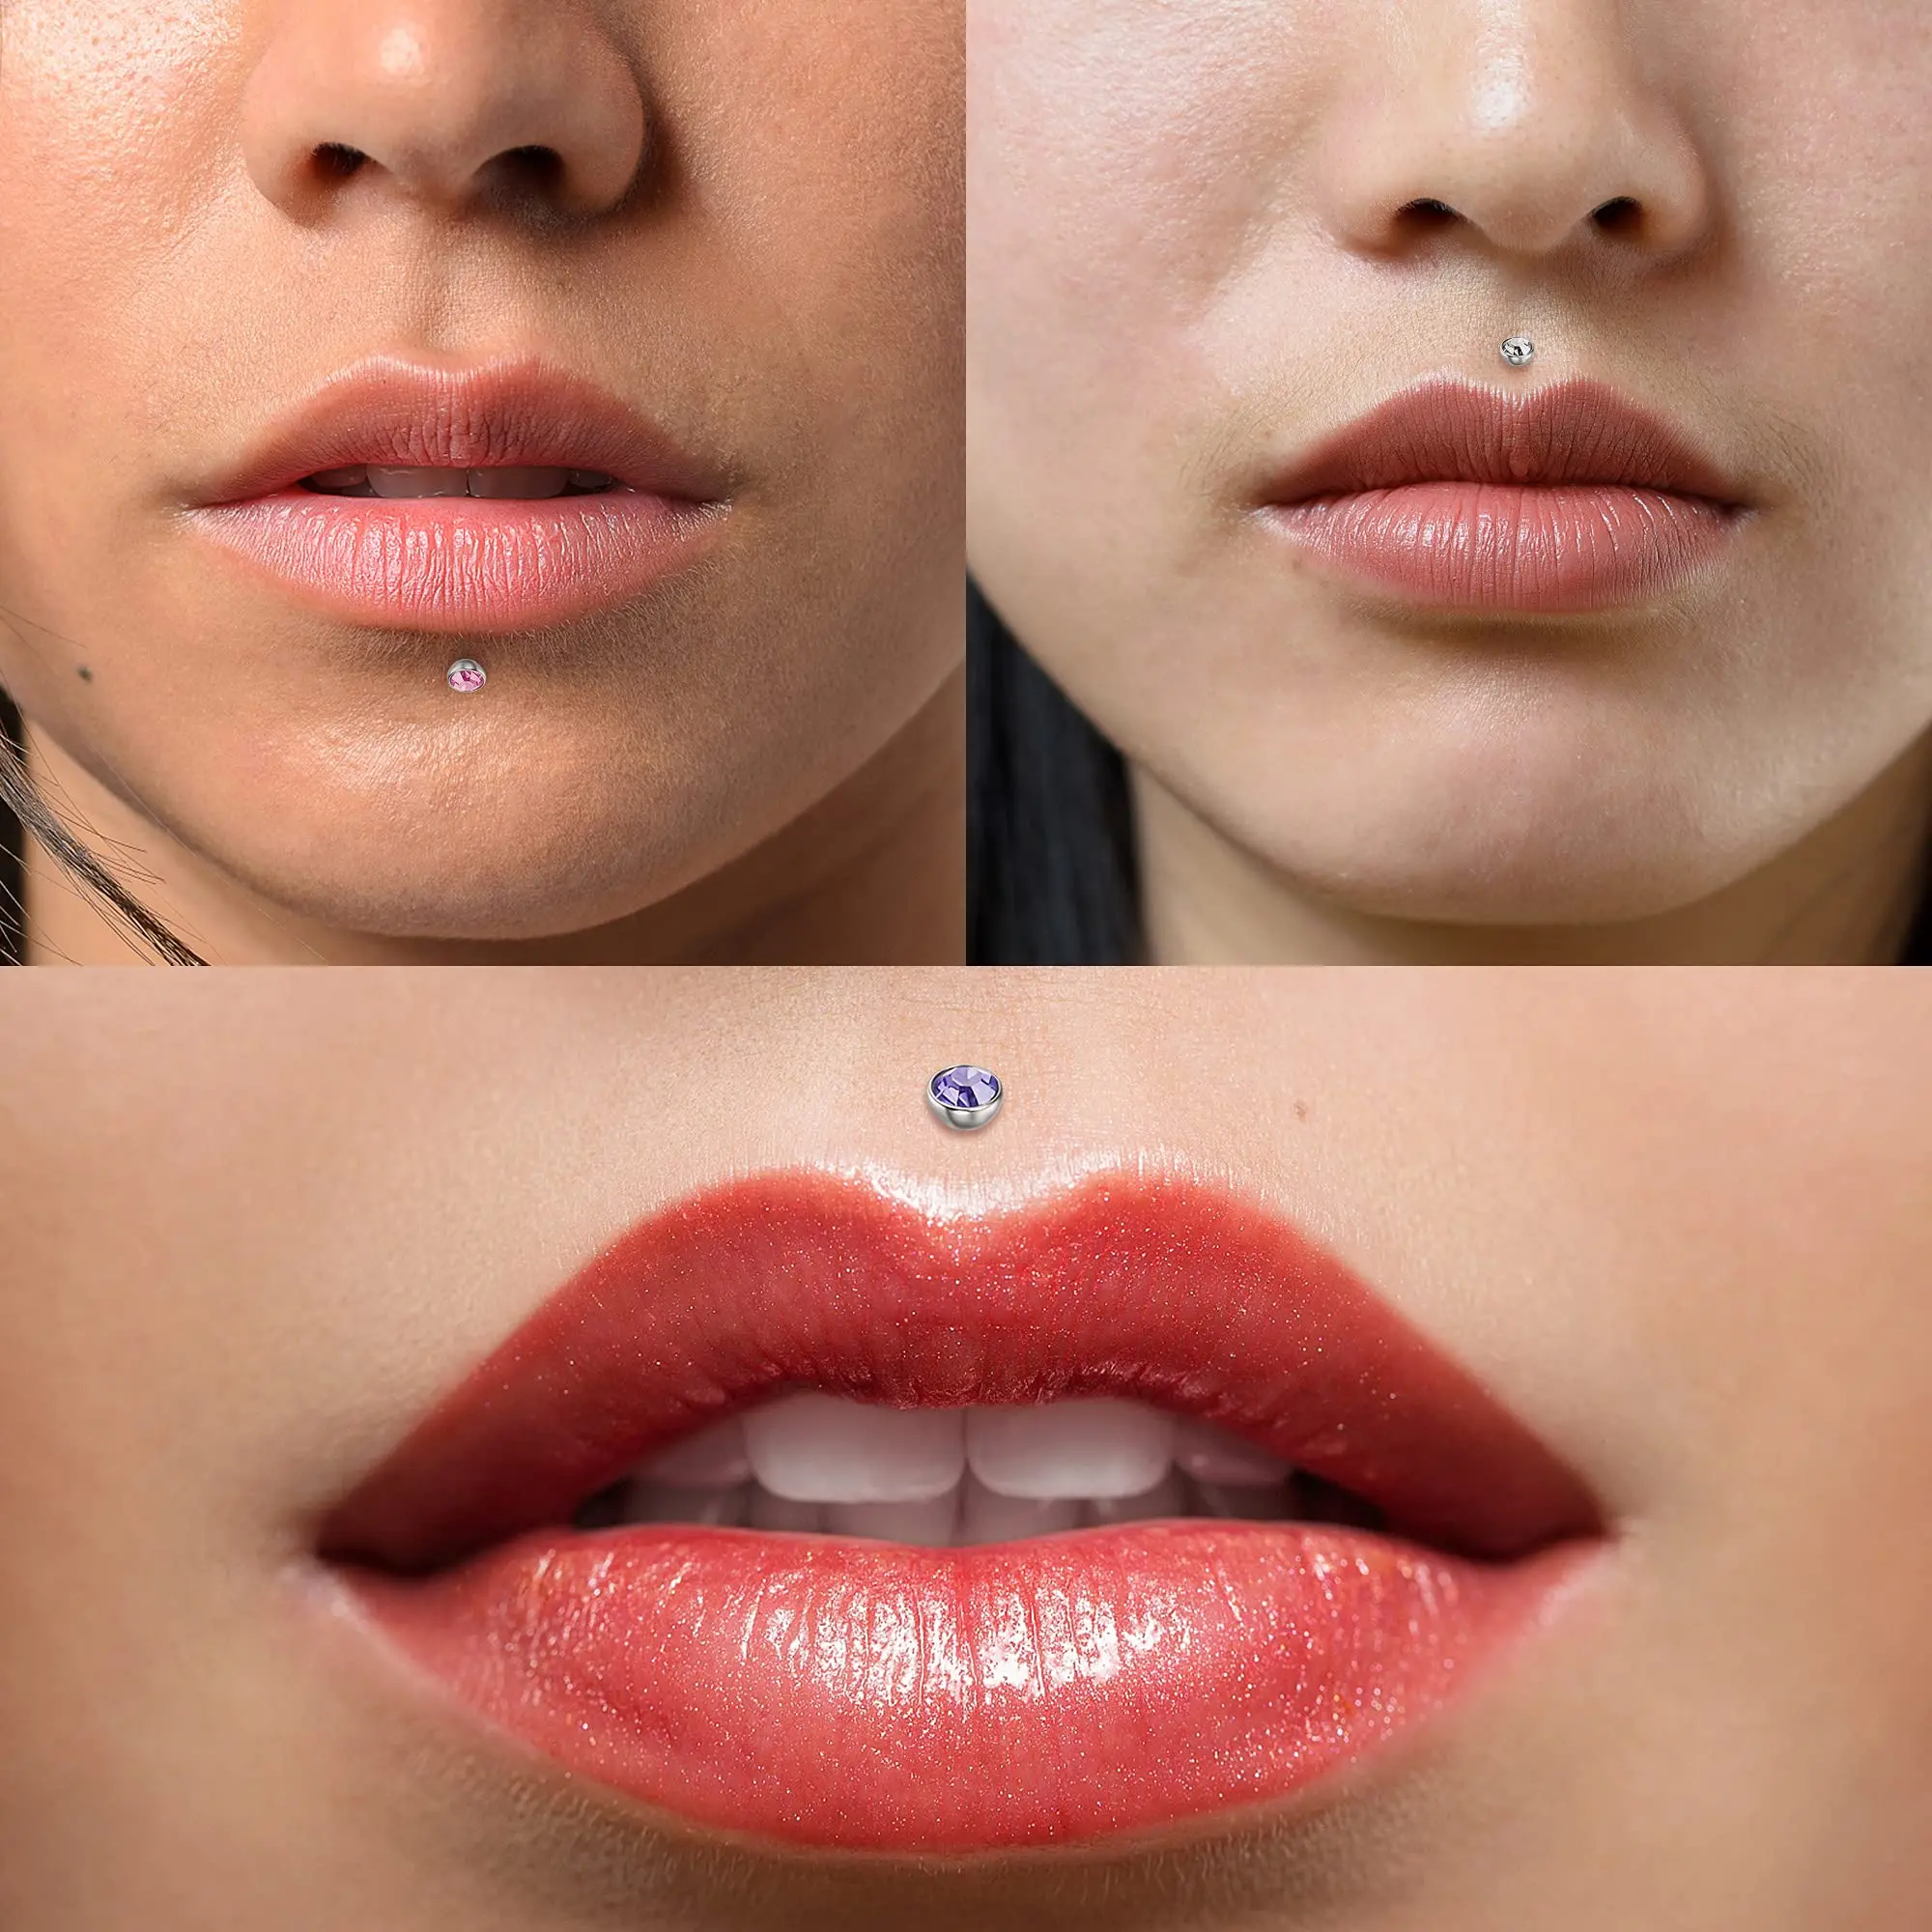 Drperfect 16G Roestvrij Staal Labret Lip Monroe Medusa Stud Piercing Voor Vrouwen Helix Oorbellen Kraakbeen Tragus Piercing 6Mm 8Mm